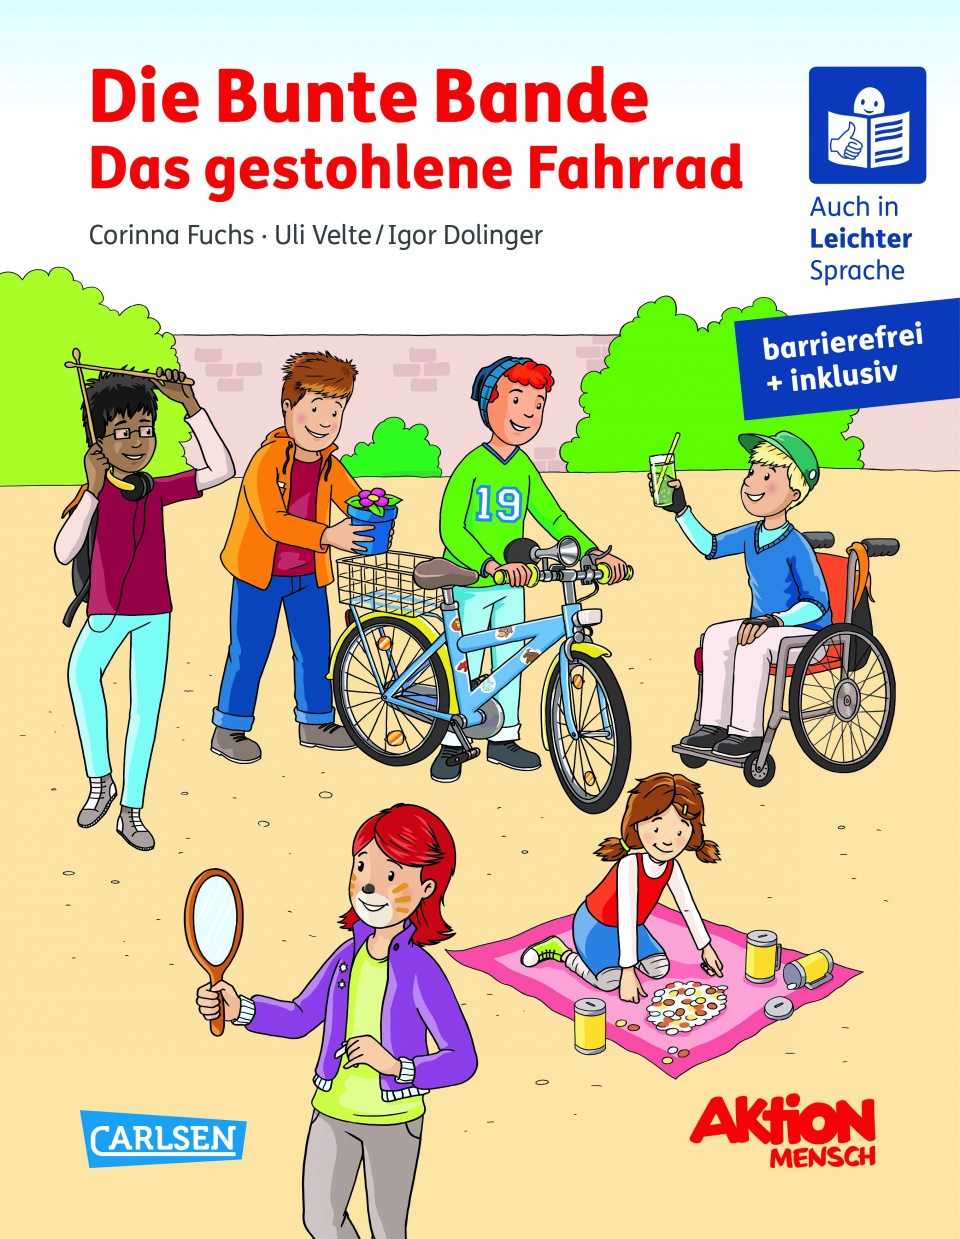 Kinder-Buch von der  Aktion Mensch.  Mit Leichter Sprache und Brailleschrift.